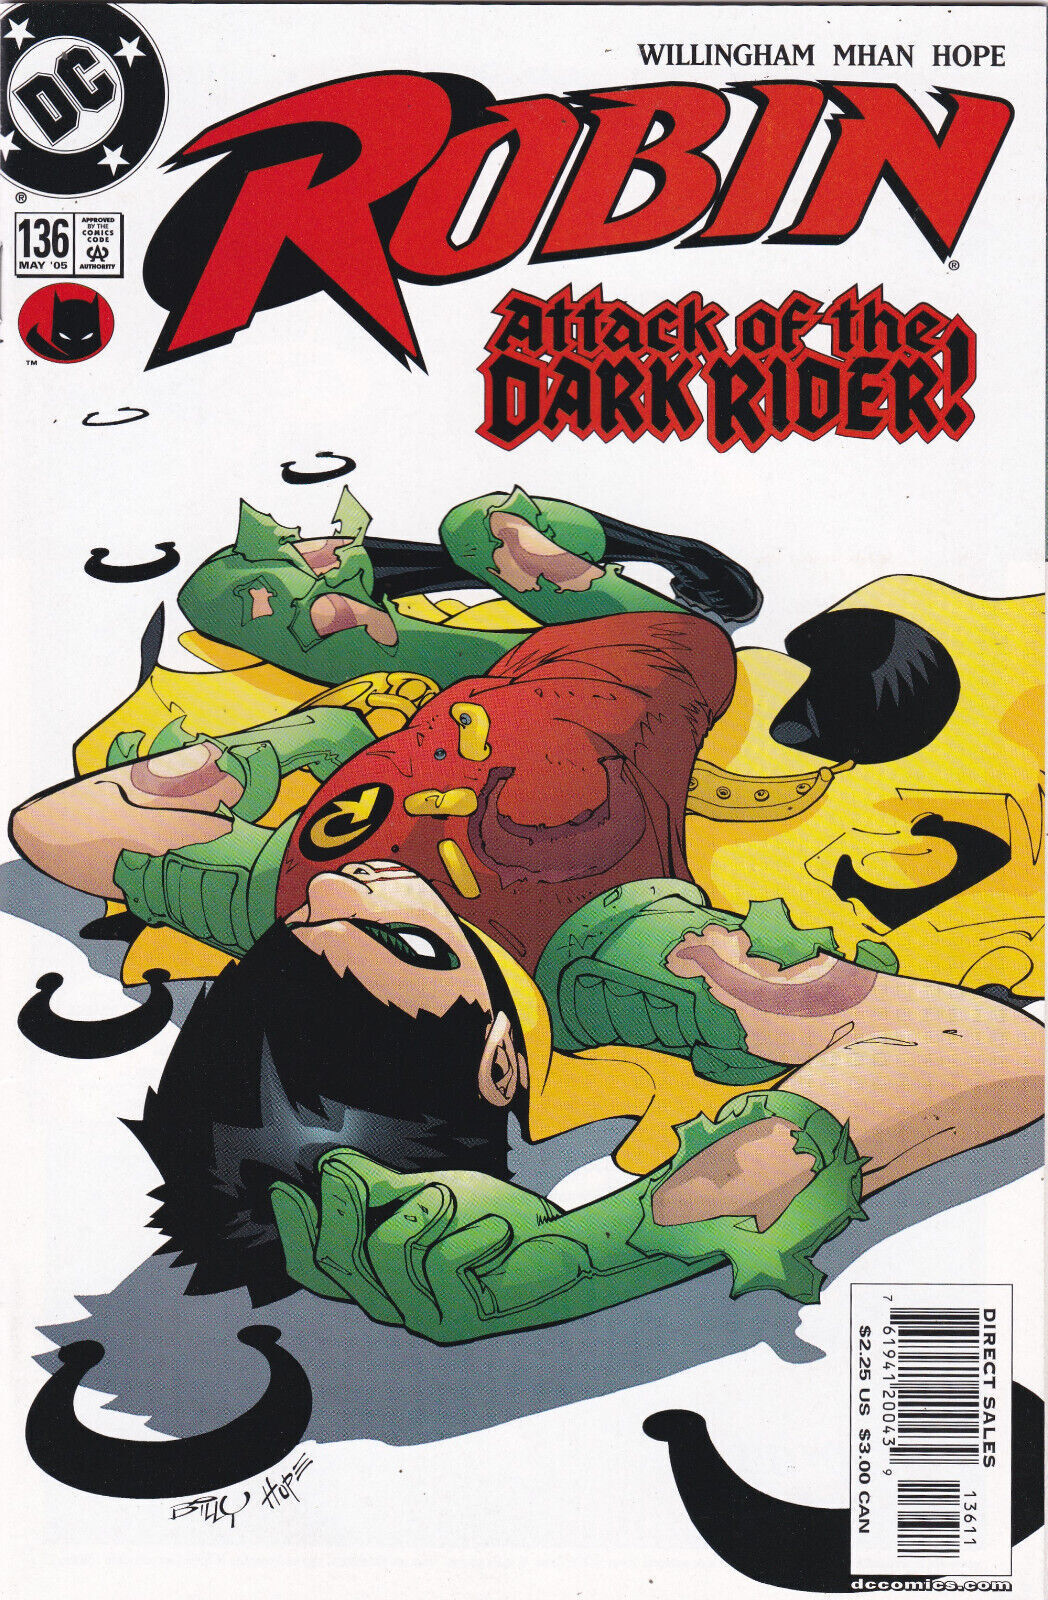 Robin #136, Vol. 2 (1993-2009) DC Comics, High Grade